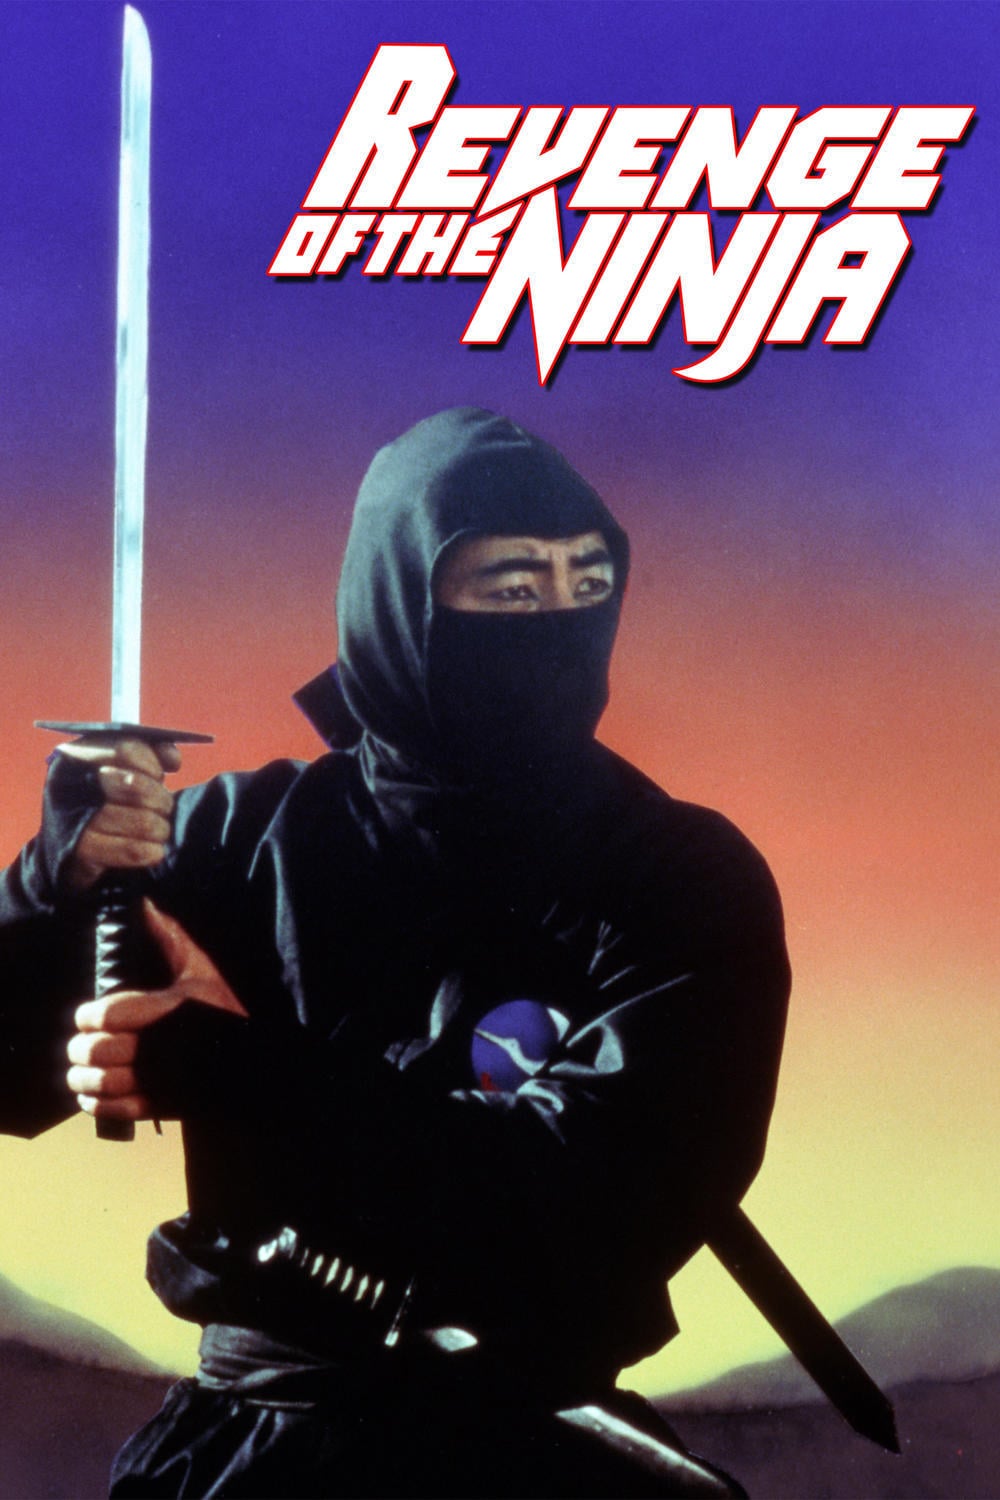 Постер фильма "Месть ниндзя" .